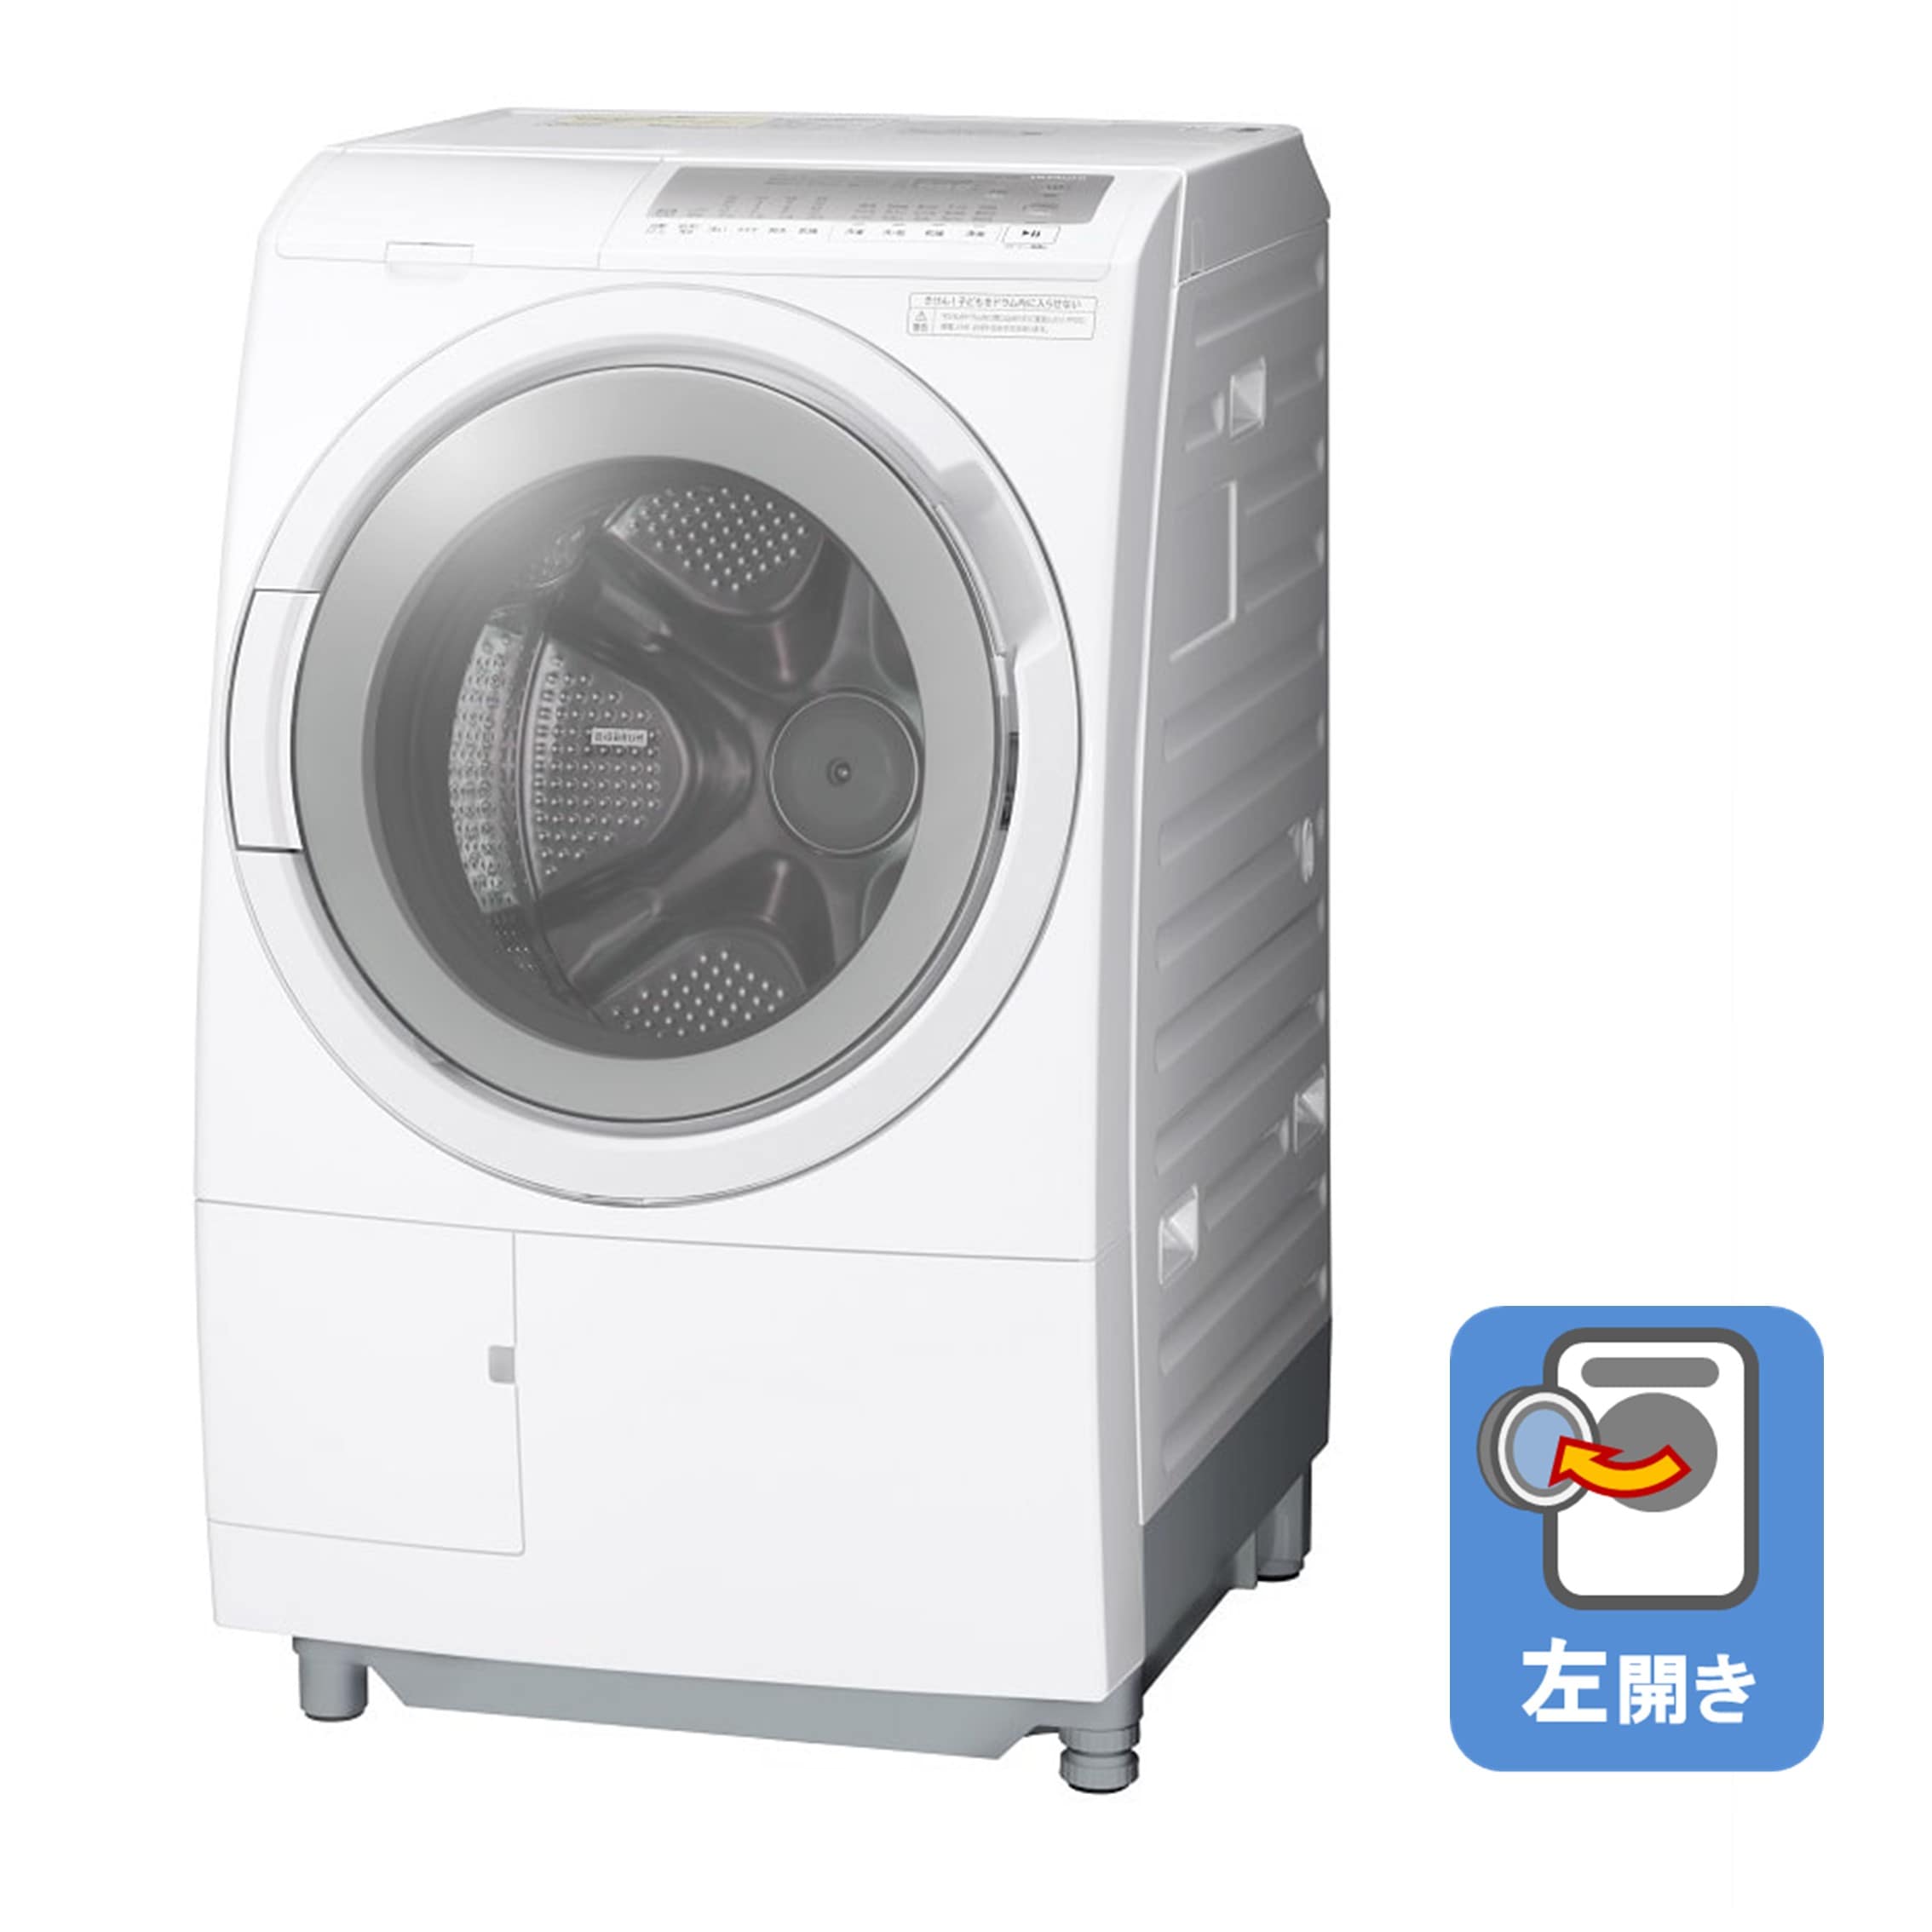 ドラム式洗濯乾燥機 日立BD-SV120HL - 生活家電